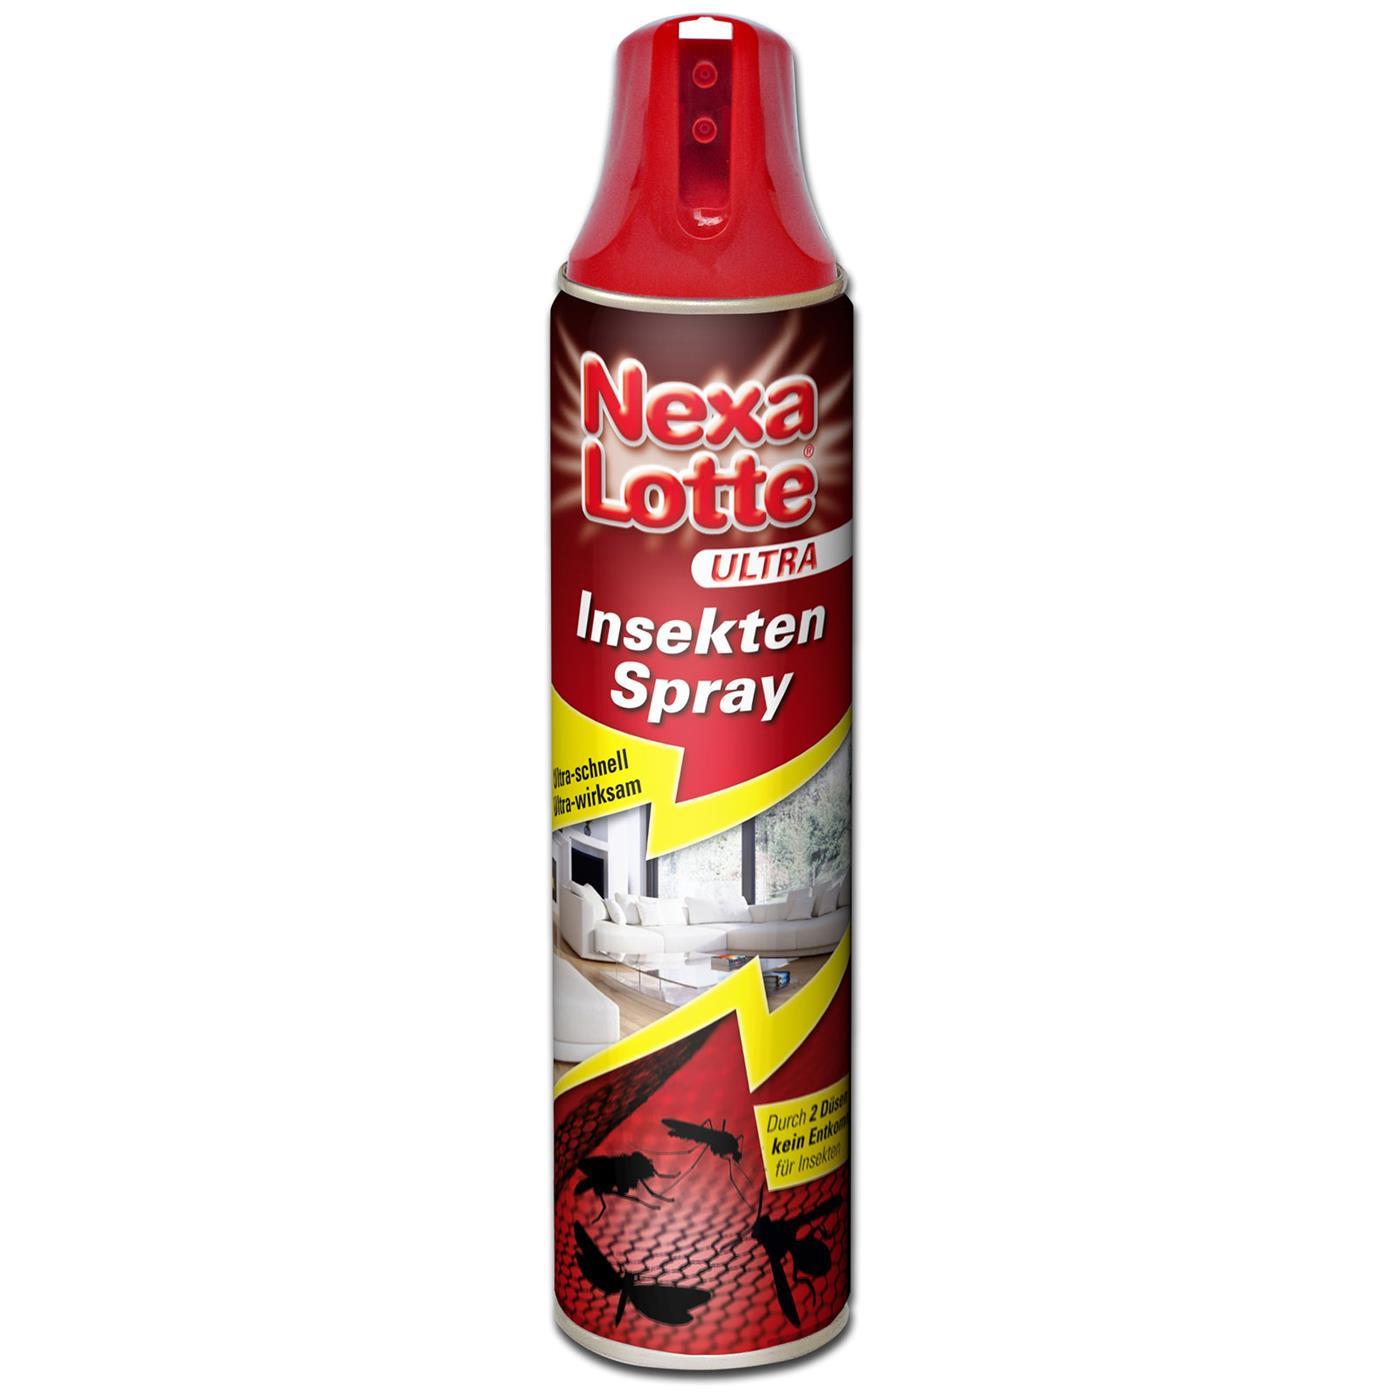  Nexa Lotte Ultra Insektenspray  400ml